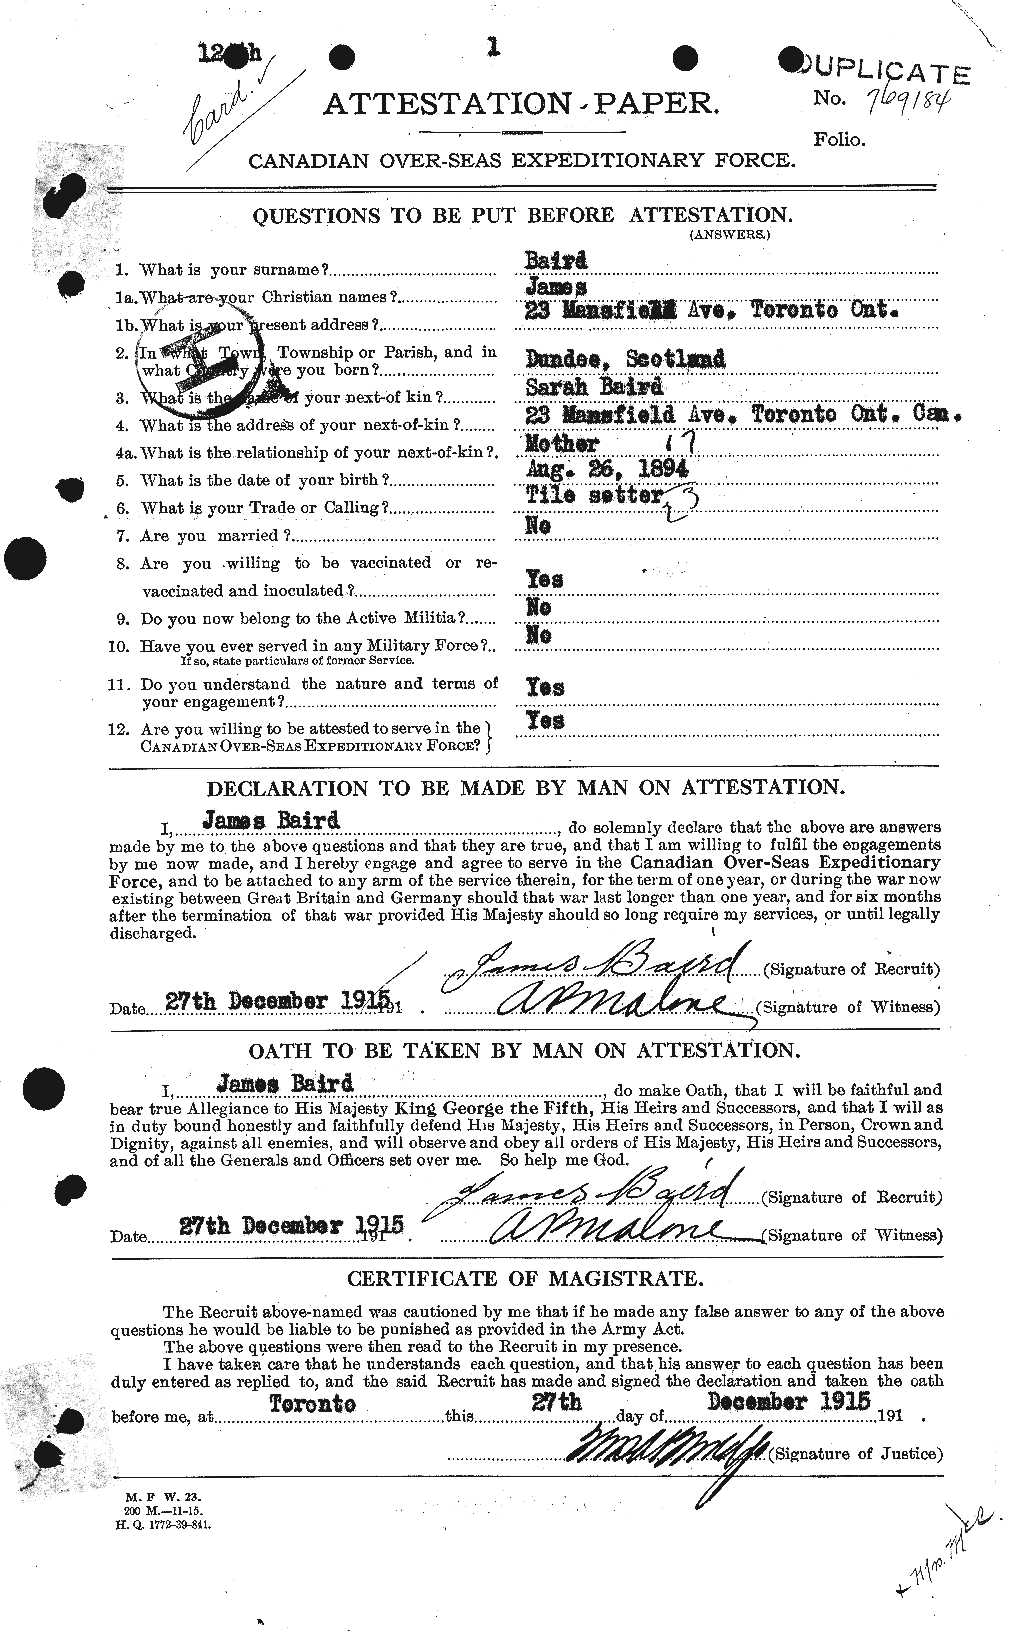 Dossiers du Personnel de la Première Guerre mondiale - CEC 226647a